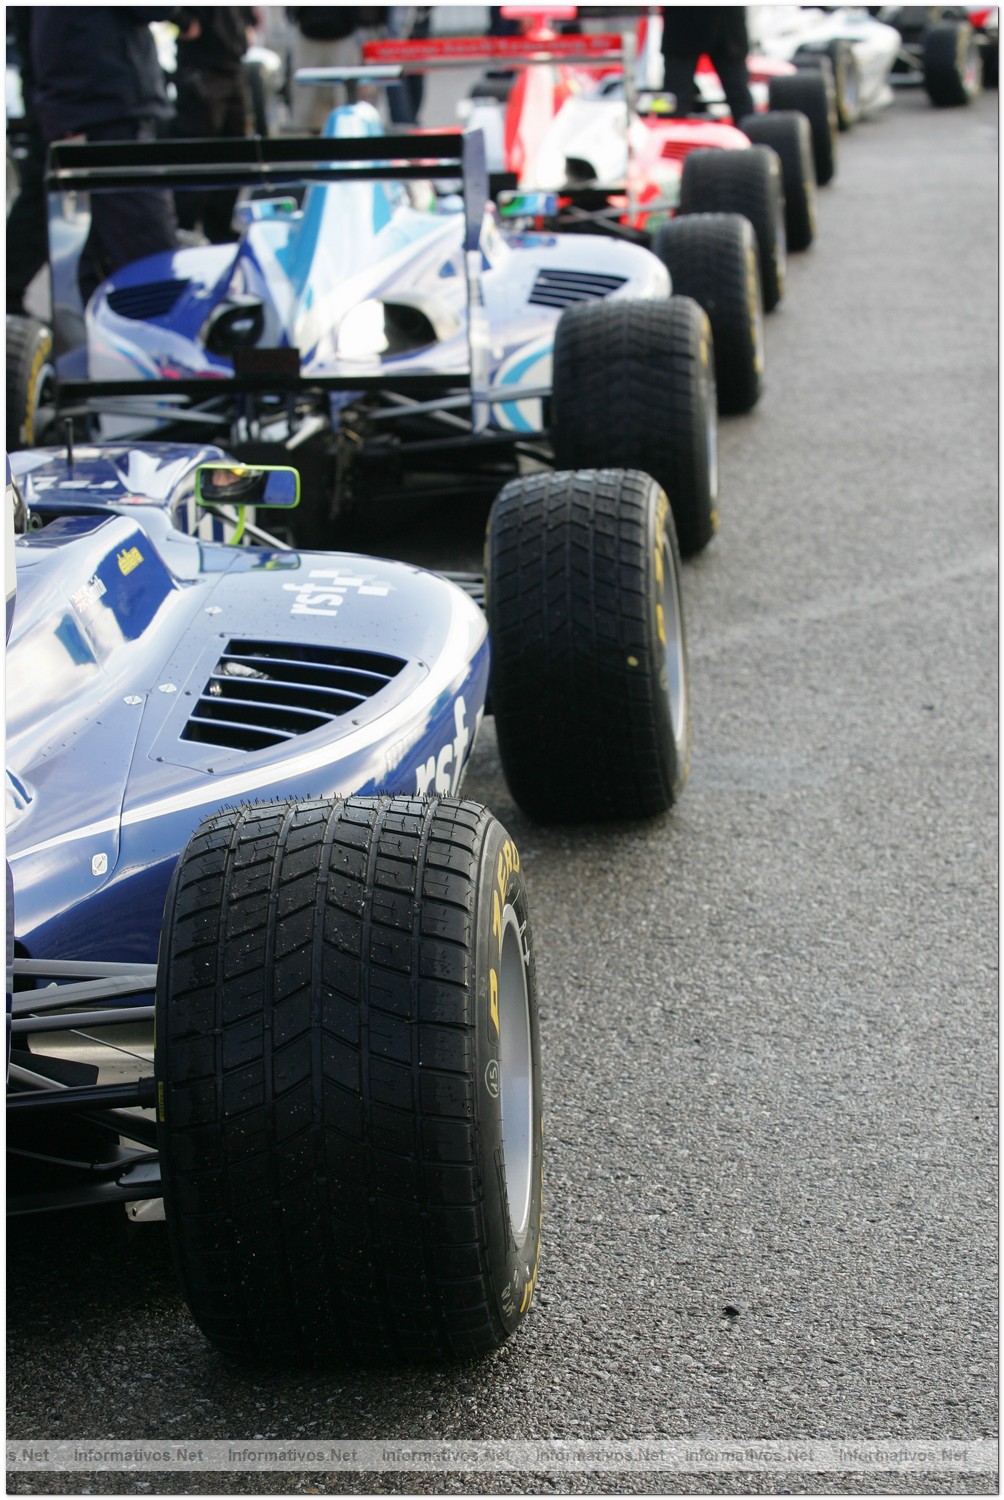 Pirelli  seleccionada proveedor único oficial de la Fórmula 1 entre 2011 y 2013: Imagen histórica de 1991